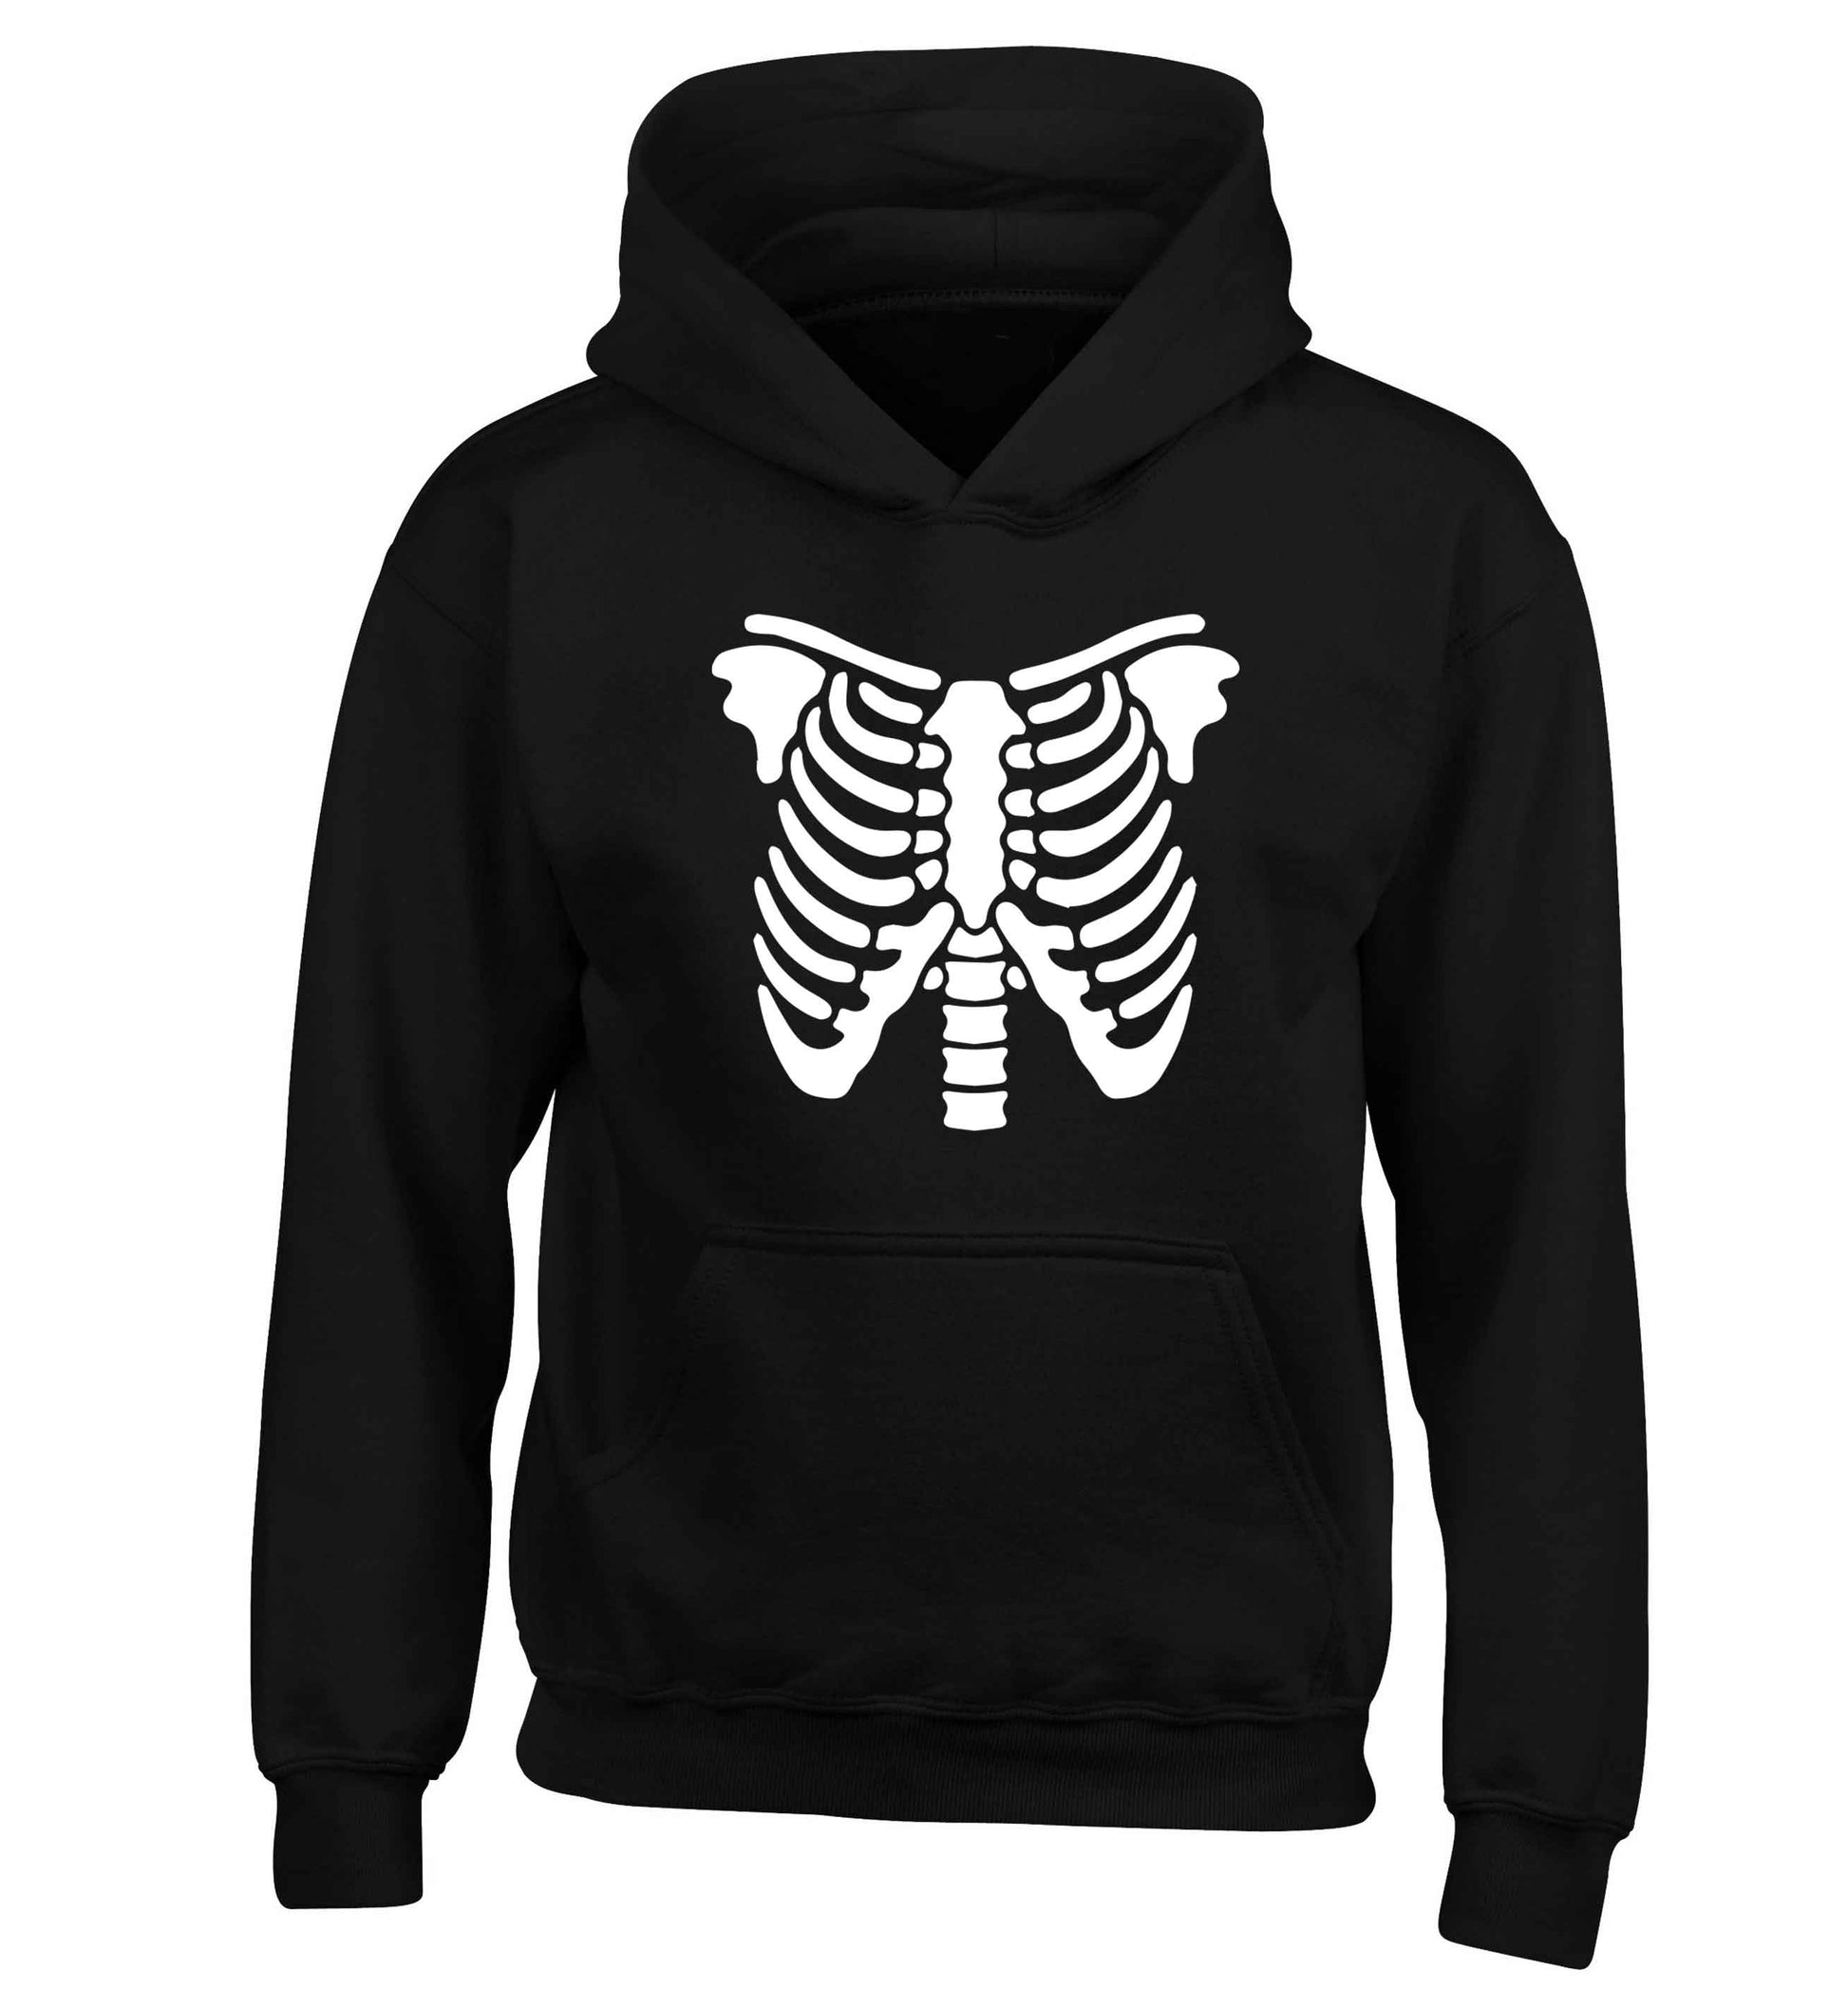 Skeleton ribcage children's black hoodie 12-13 Years